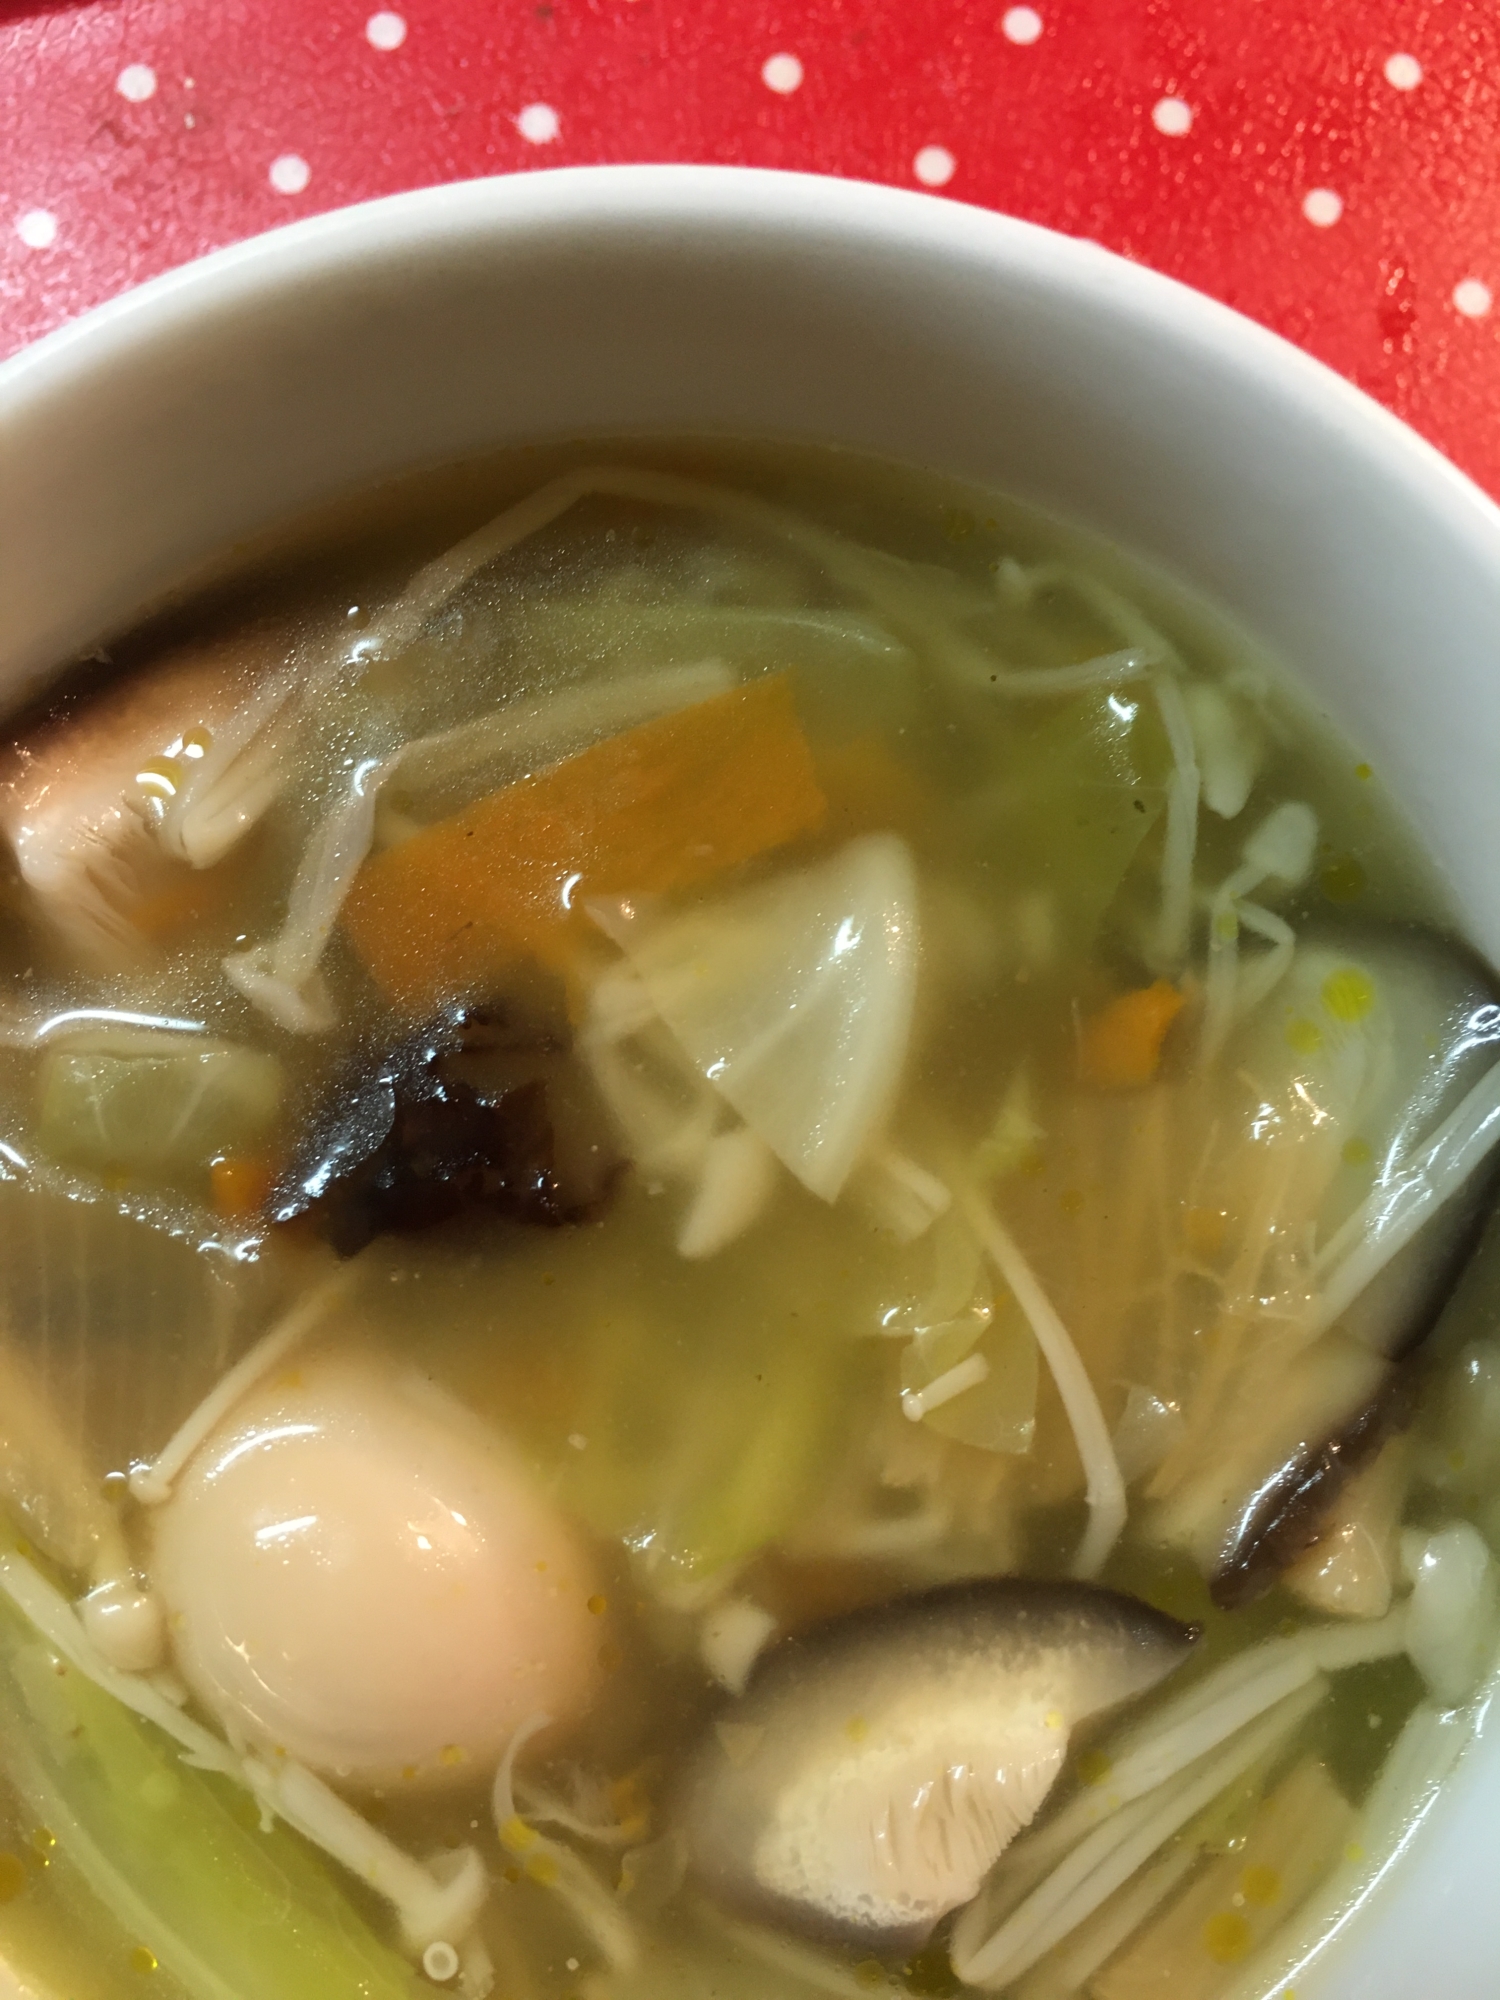 中華丼の素でお野菜スープ